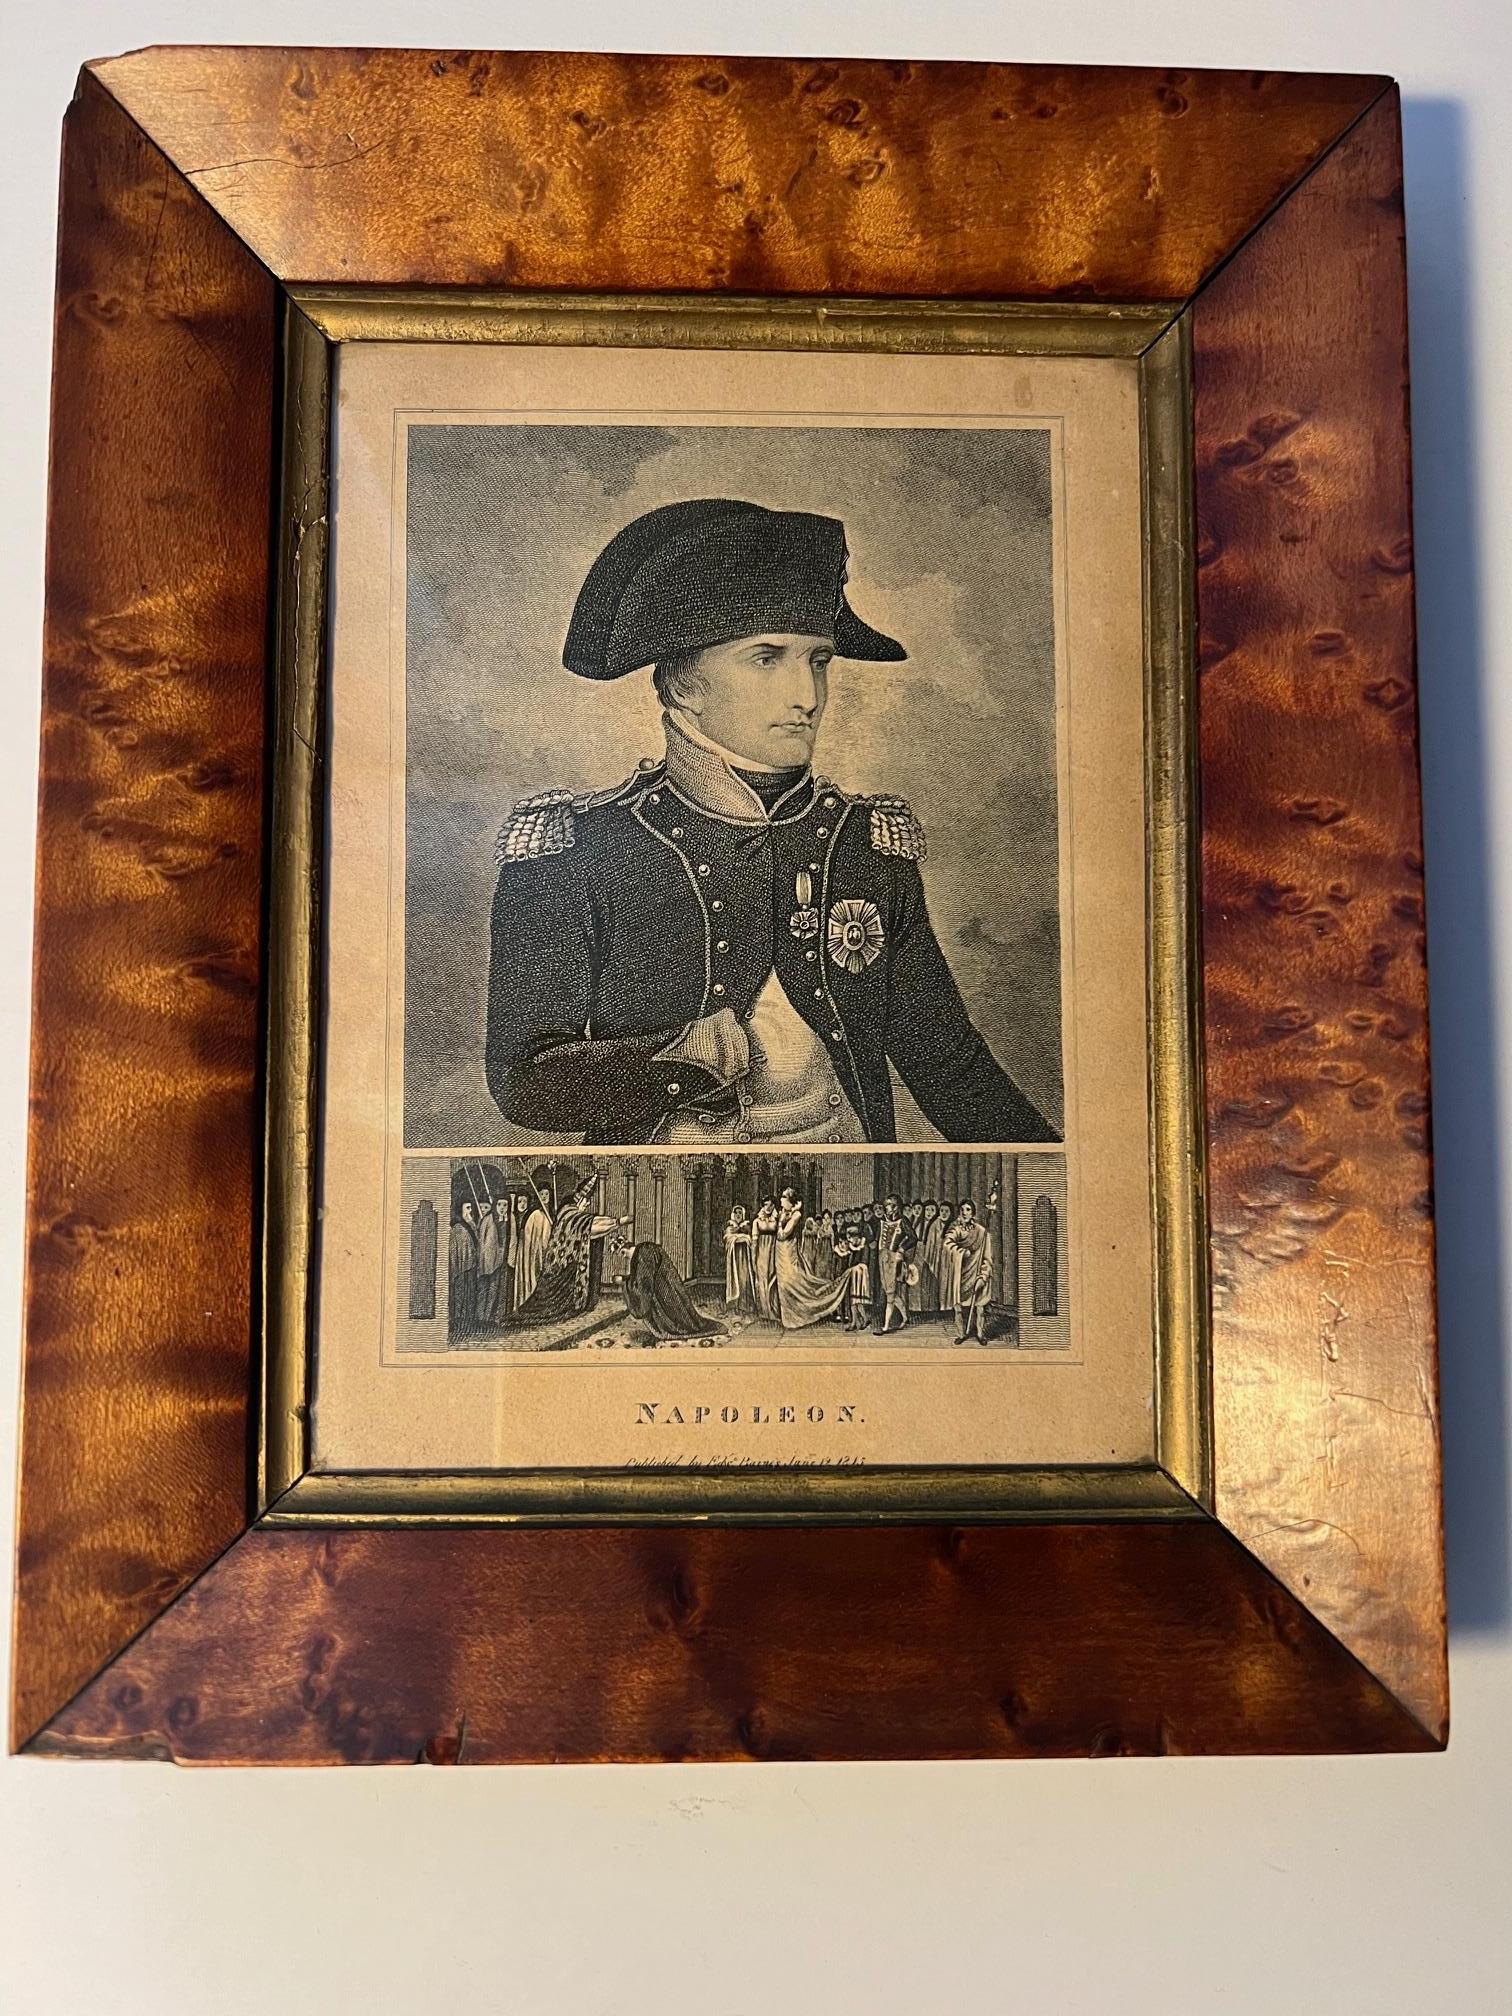 Cadre en érable piqué assez doux et bonne gravure de Napoléon Bonaparte, datée du 12 juin 1815, publiée par Edward Baines.

Cette gravure semble être restée dans ce cadre toute sa vie.
La qualité du cadre suggère qu'il a pu appartenir à un officier